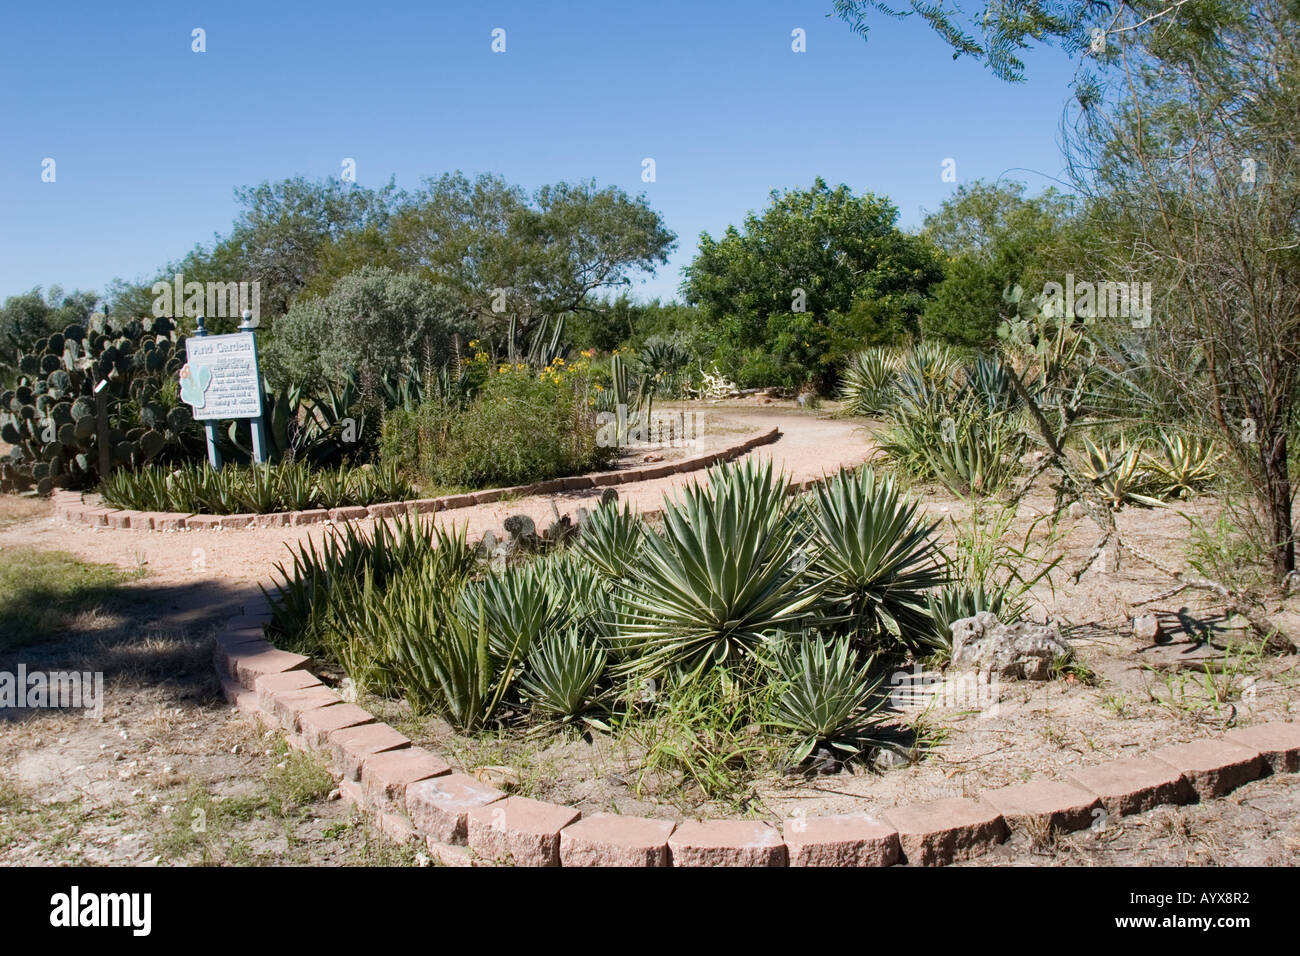 Corpus Christi Botanical Gardens Nature Center Has Become The